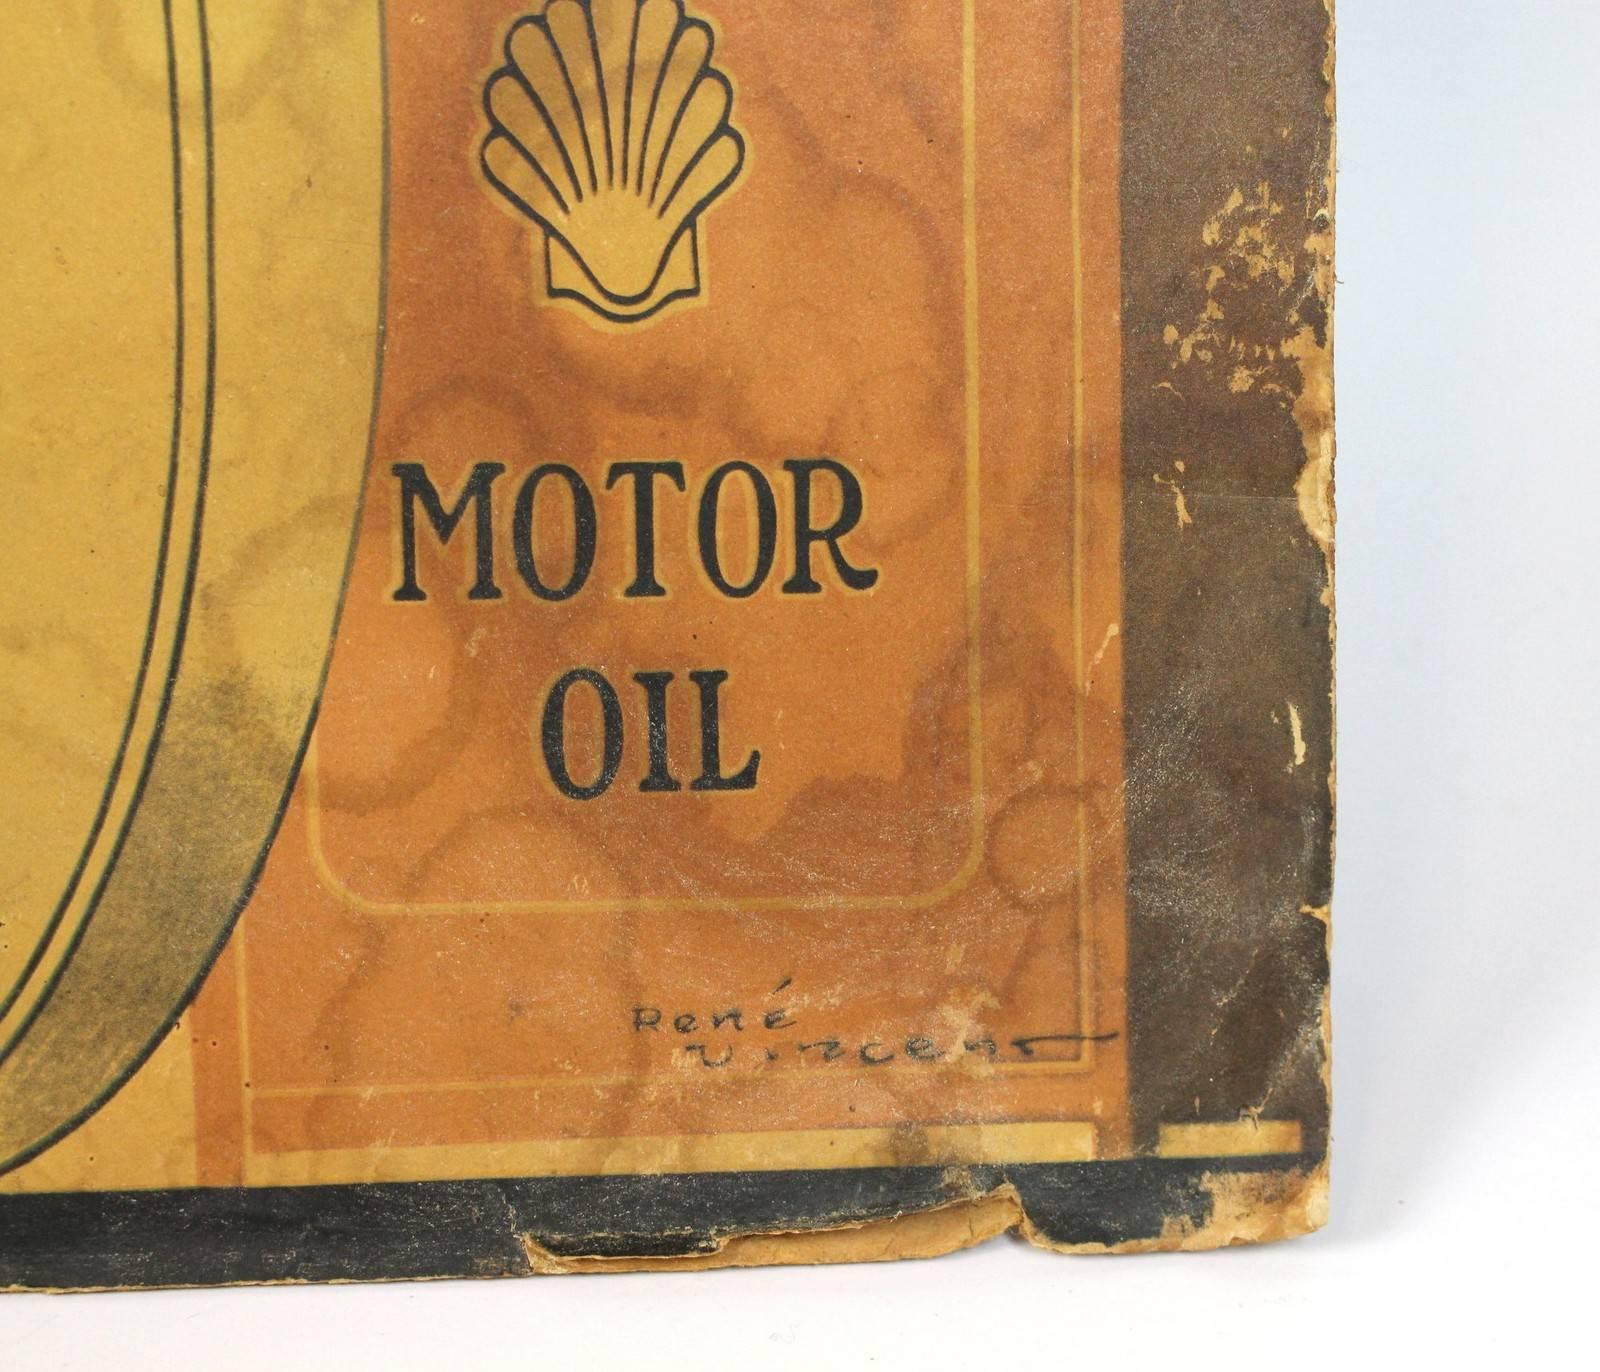 Vintage-Poster, Shell, Motor, Öl, Gasoline, von Rene Vincent, von 1926 (Französisch)